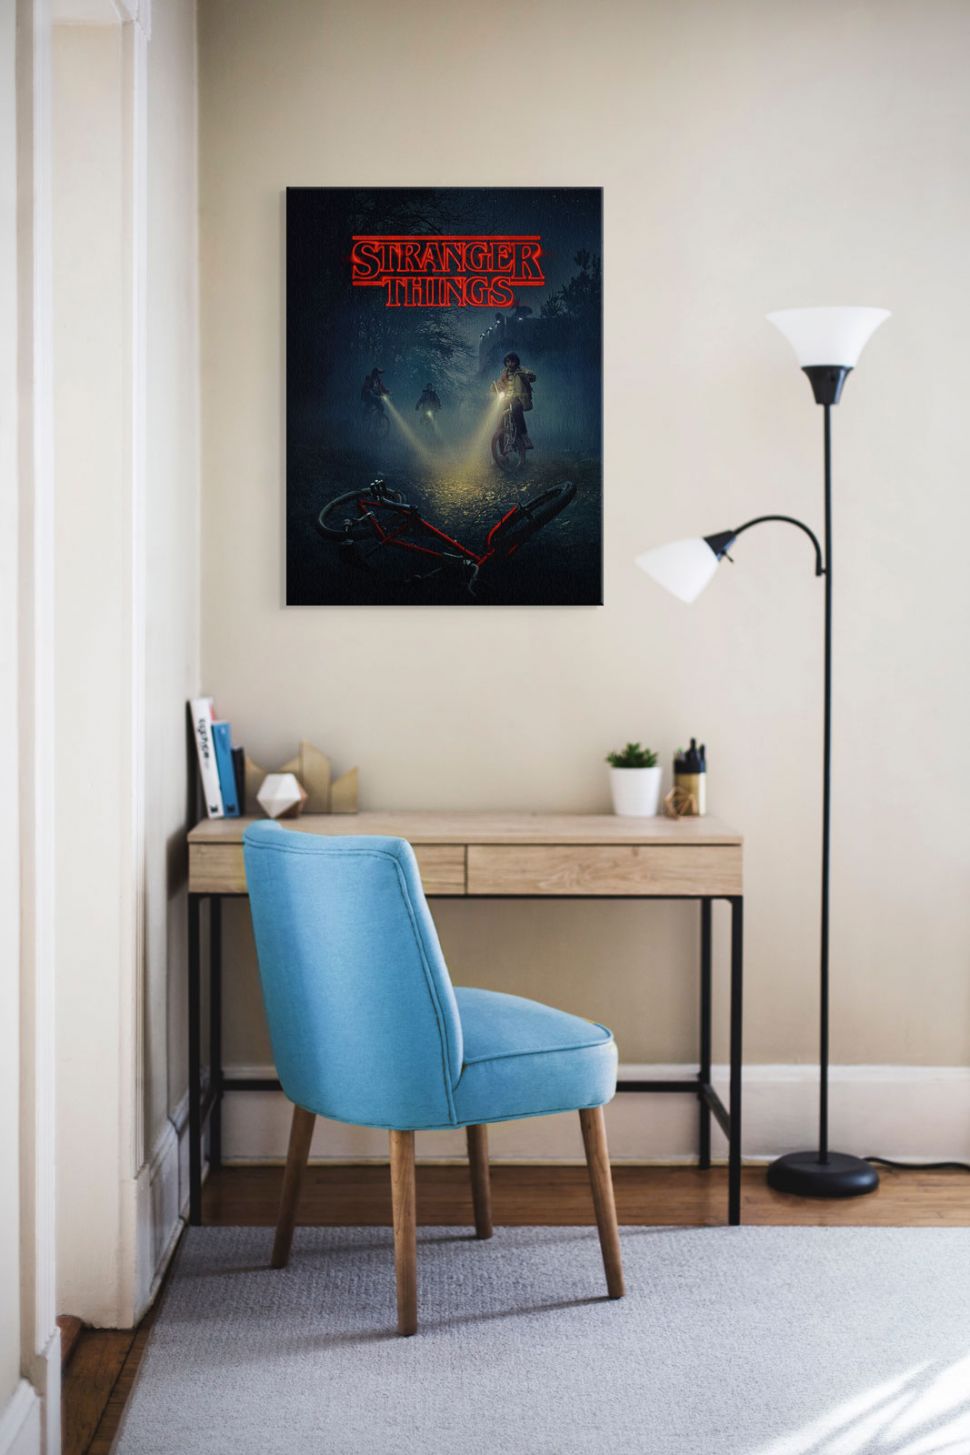 Obraz z chłopcami na rowerach z serialu Stranger Things powieszony w pokoju nastolatka nad biurkiem i niebieskim krzesłem